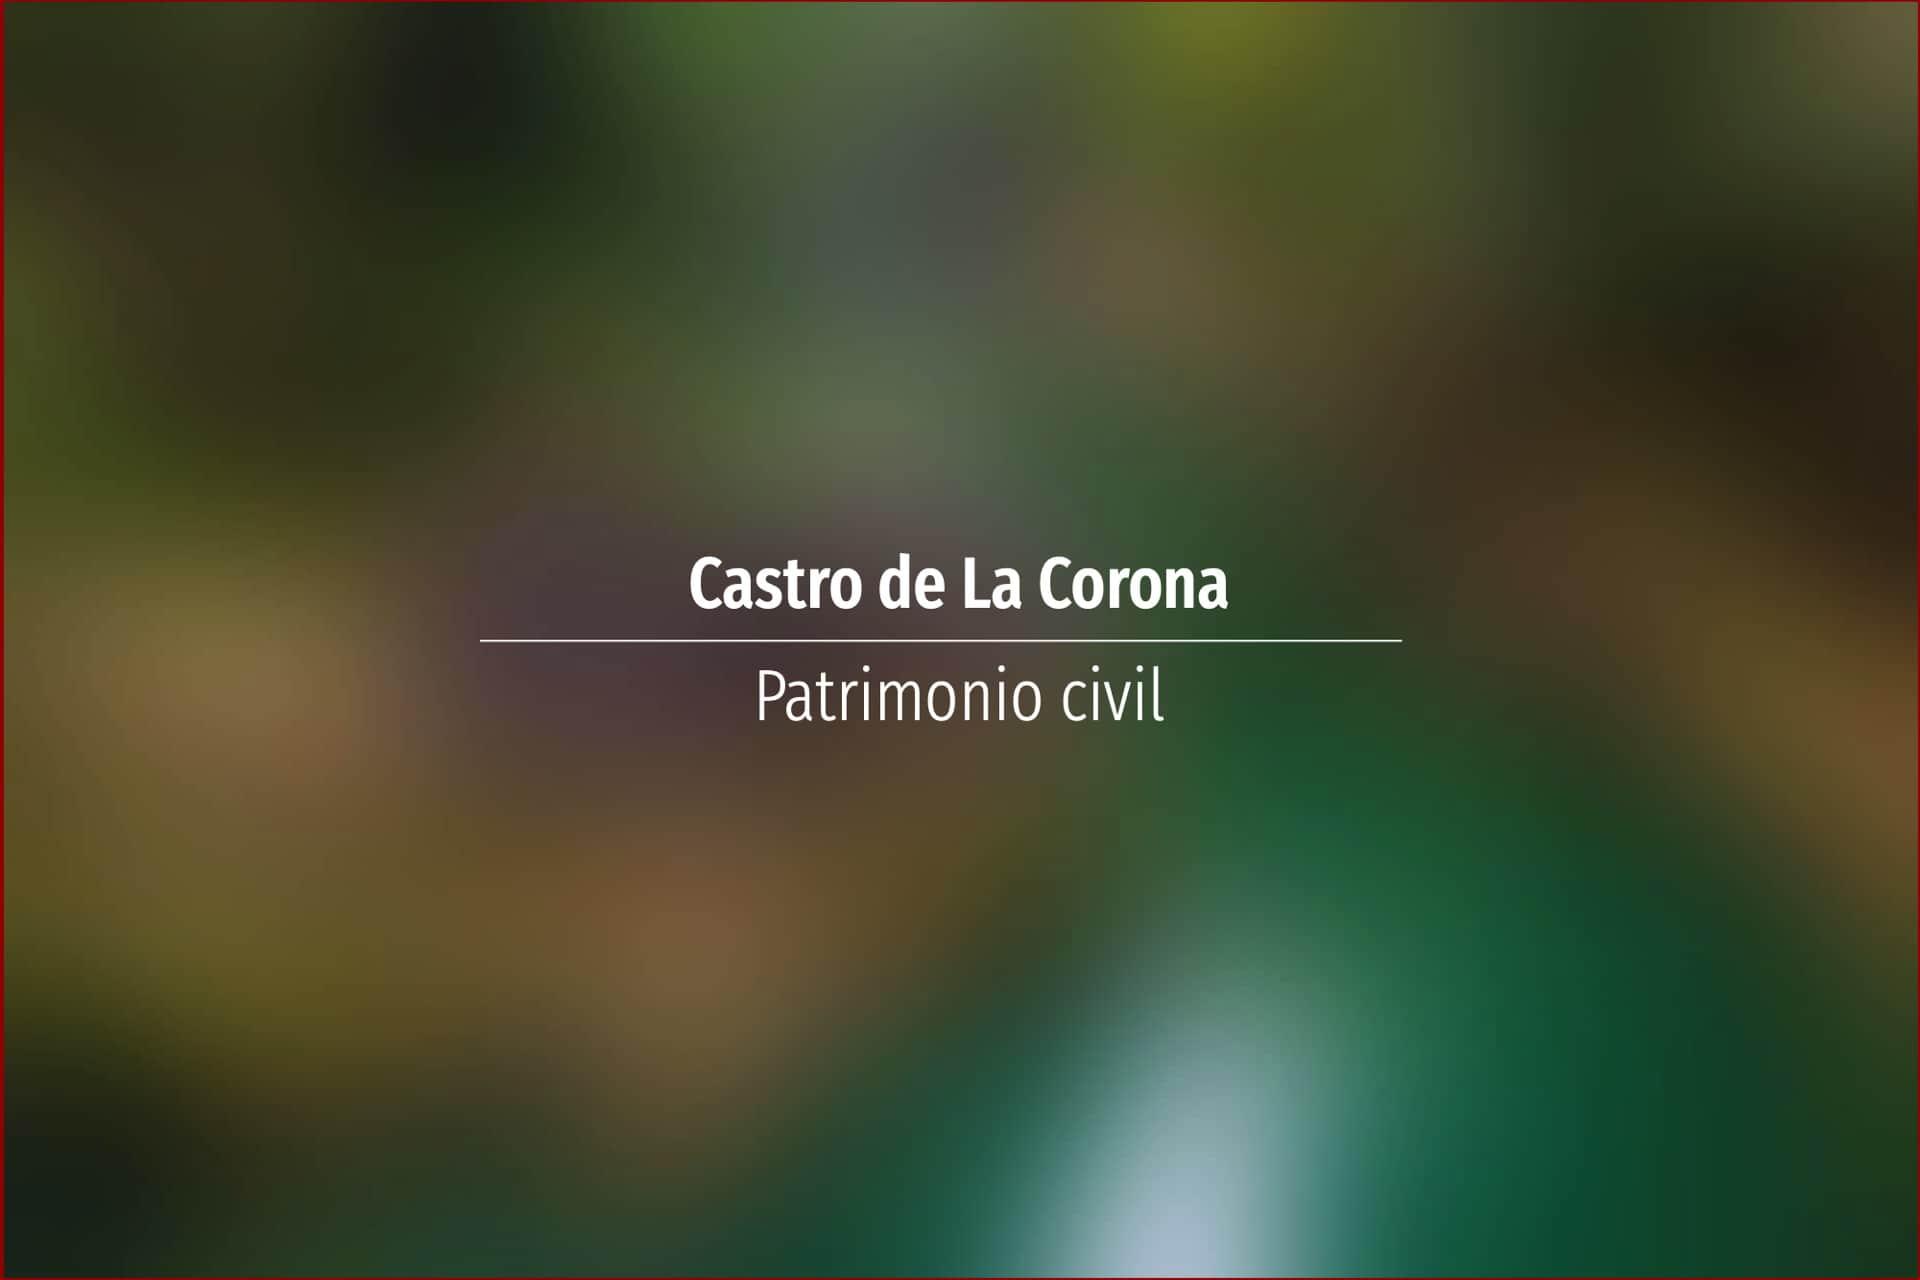 Castro de La Corona